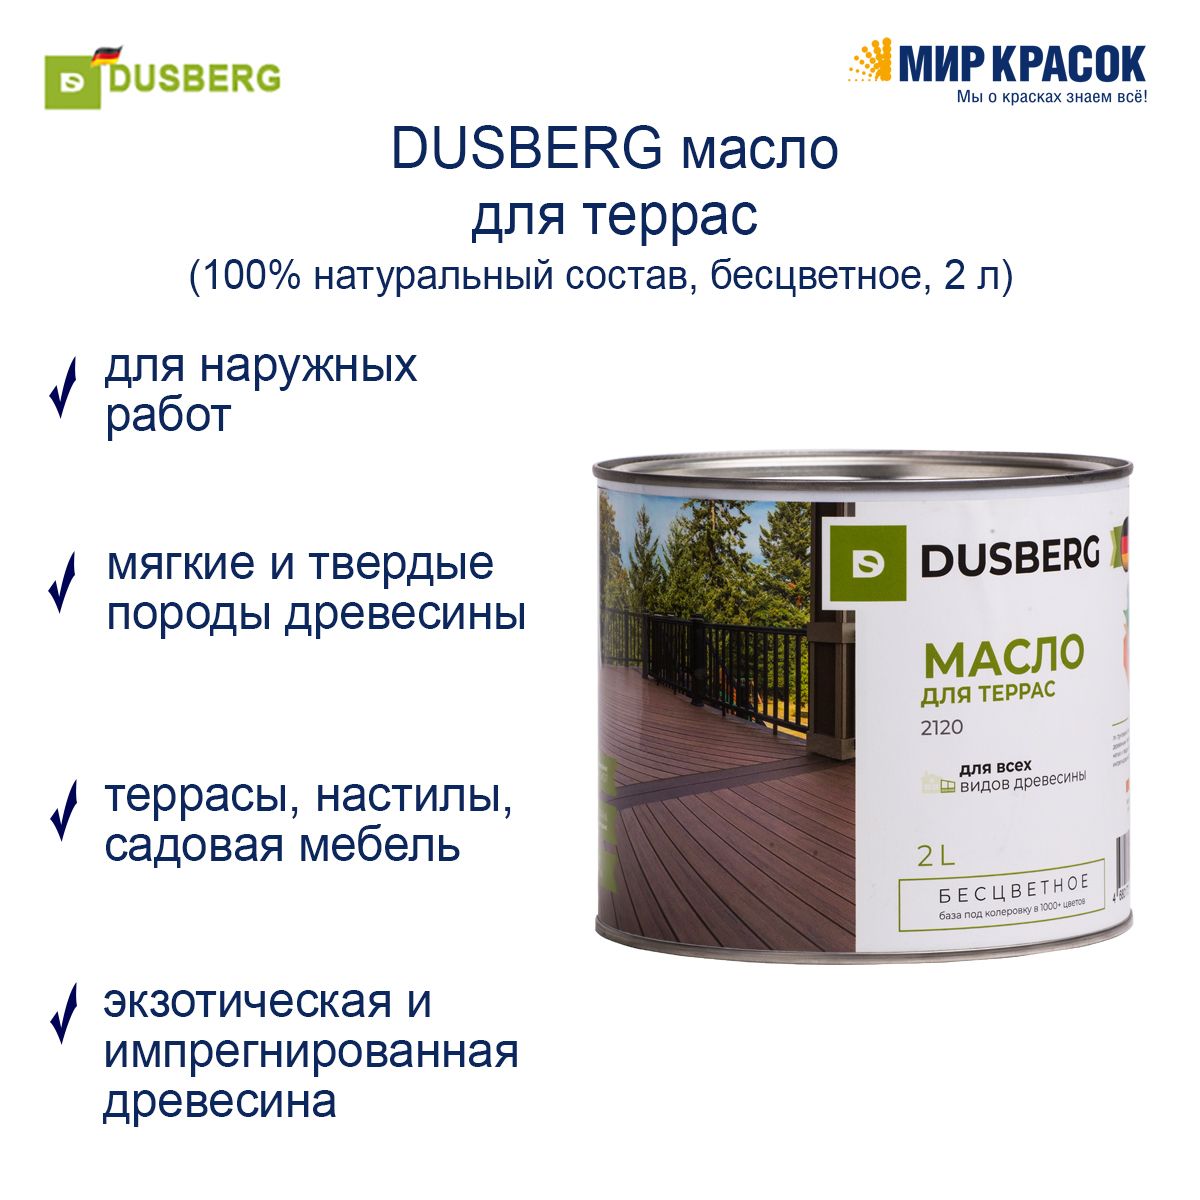 Масло dusberg. Dusberg 2120 масло для террас. 2120 Dusberg масло для террас, 2 л, шт. Dusberg масло для дерева. Dusberg / Дюсберг масло для террас.